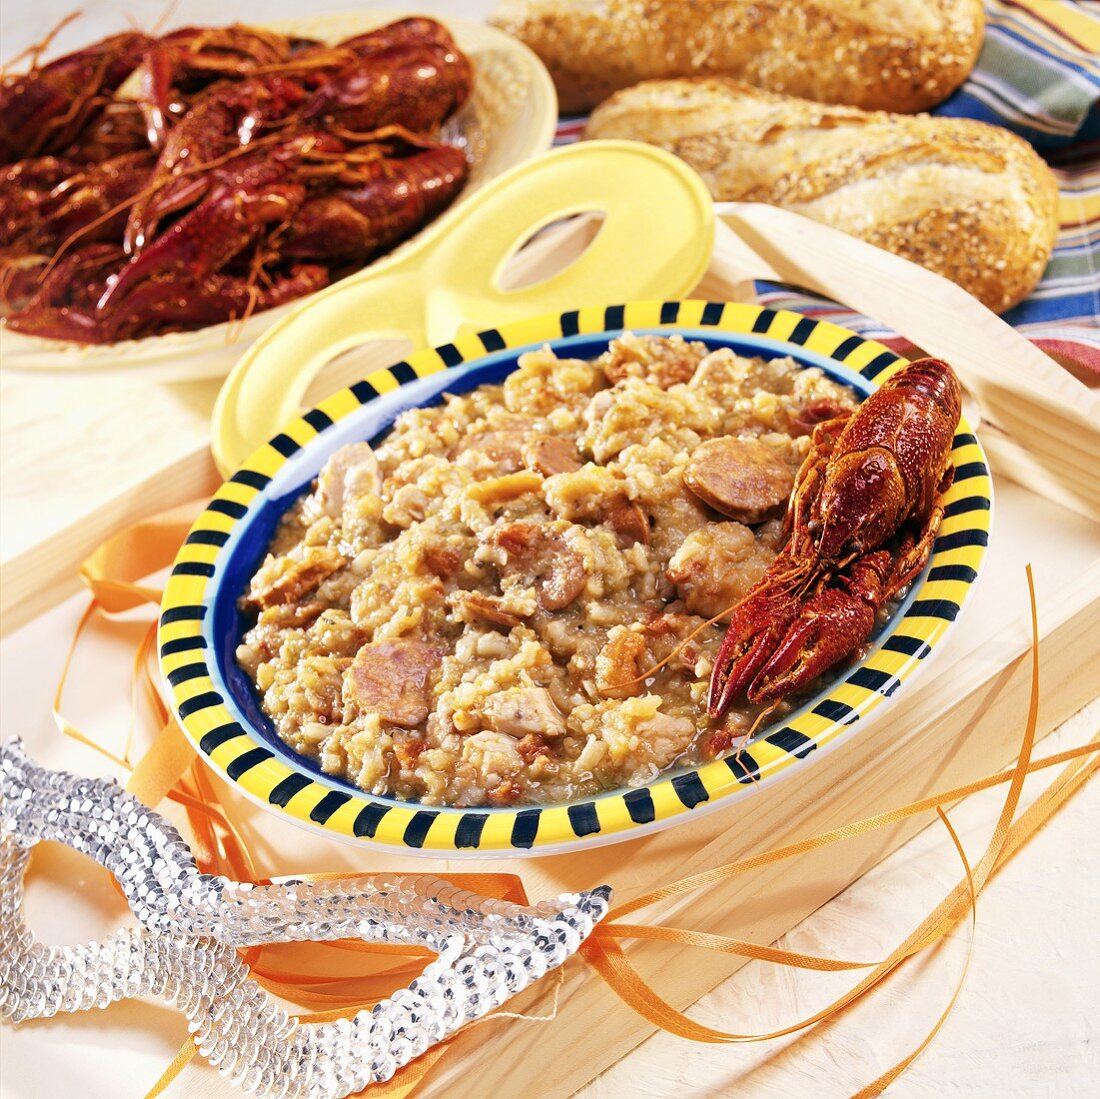 Hähnchentopf (Chicken gumbo) mit Wurst (Andouille) und Hummerkrabbe; Mardi gras